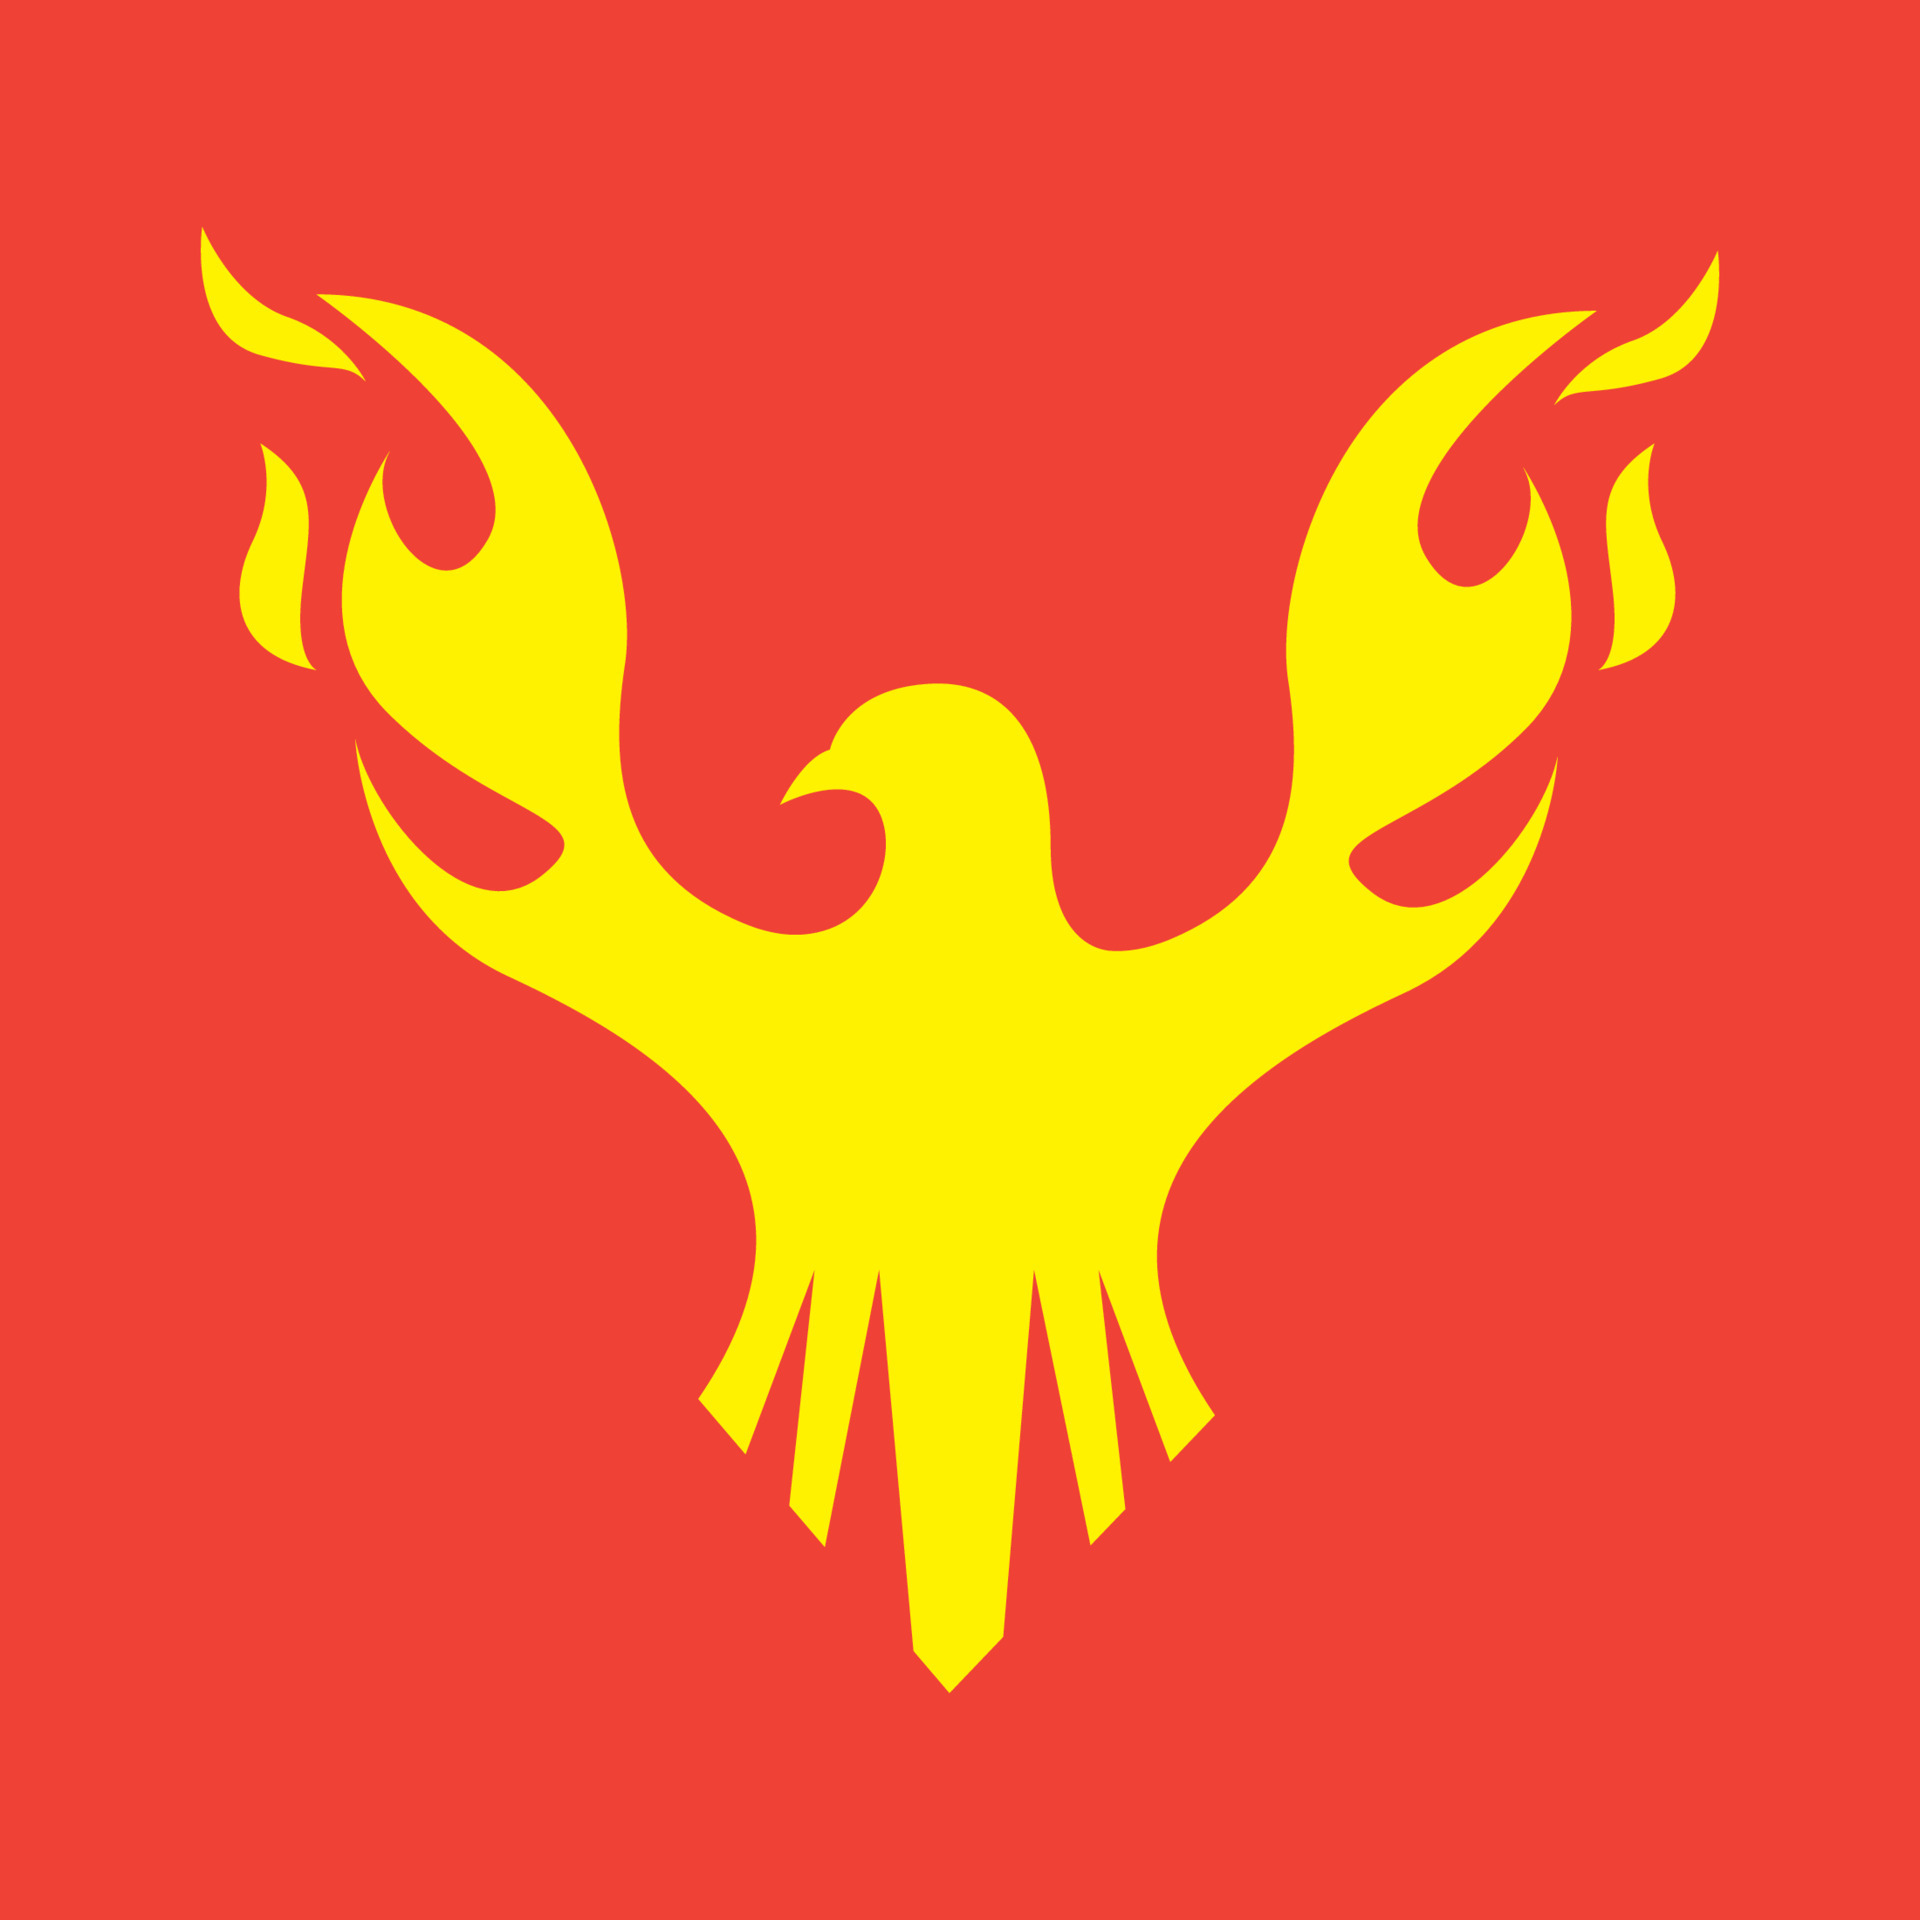 Logotipo Do Fogo Fogo Vermelho, Amarelo - Ilustração Do Vetor